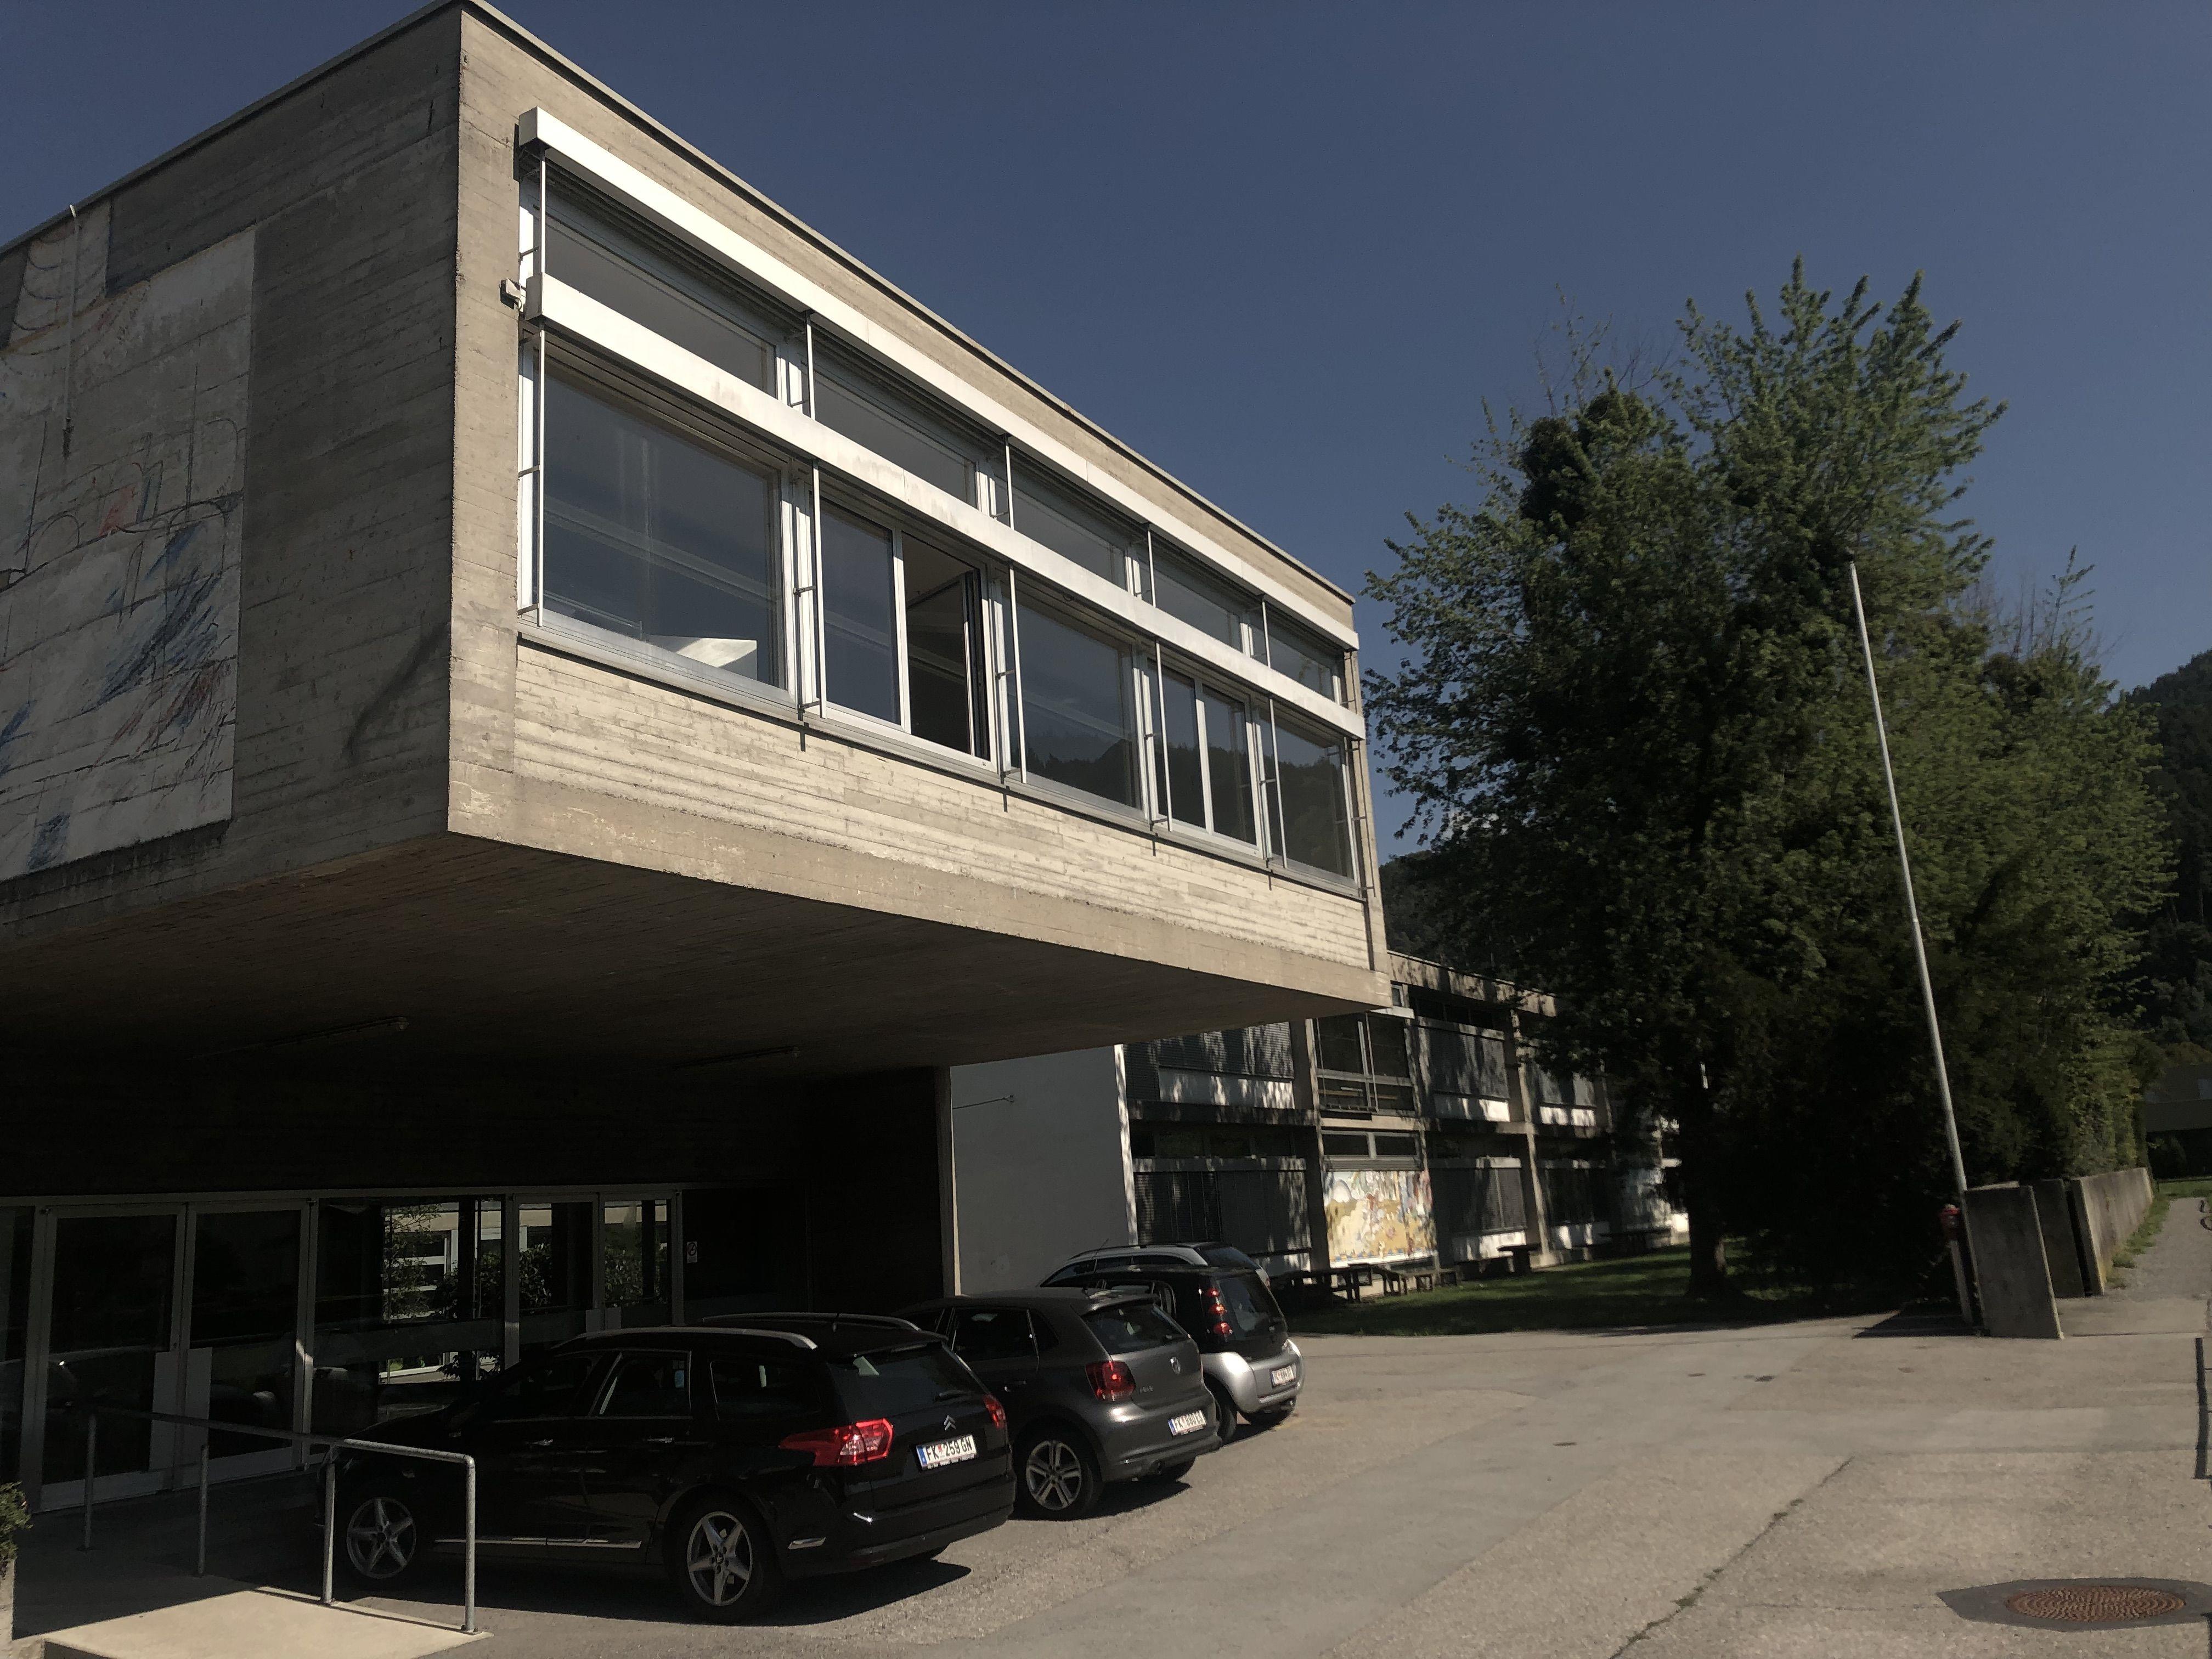 Die Volksschule Altenstadt ist bautechnisch und energetisch in die Jahre gekommen. Der Schulneubau ist nach aktuellem Stand auf Herbst 2021 angesetzt.